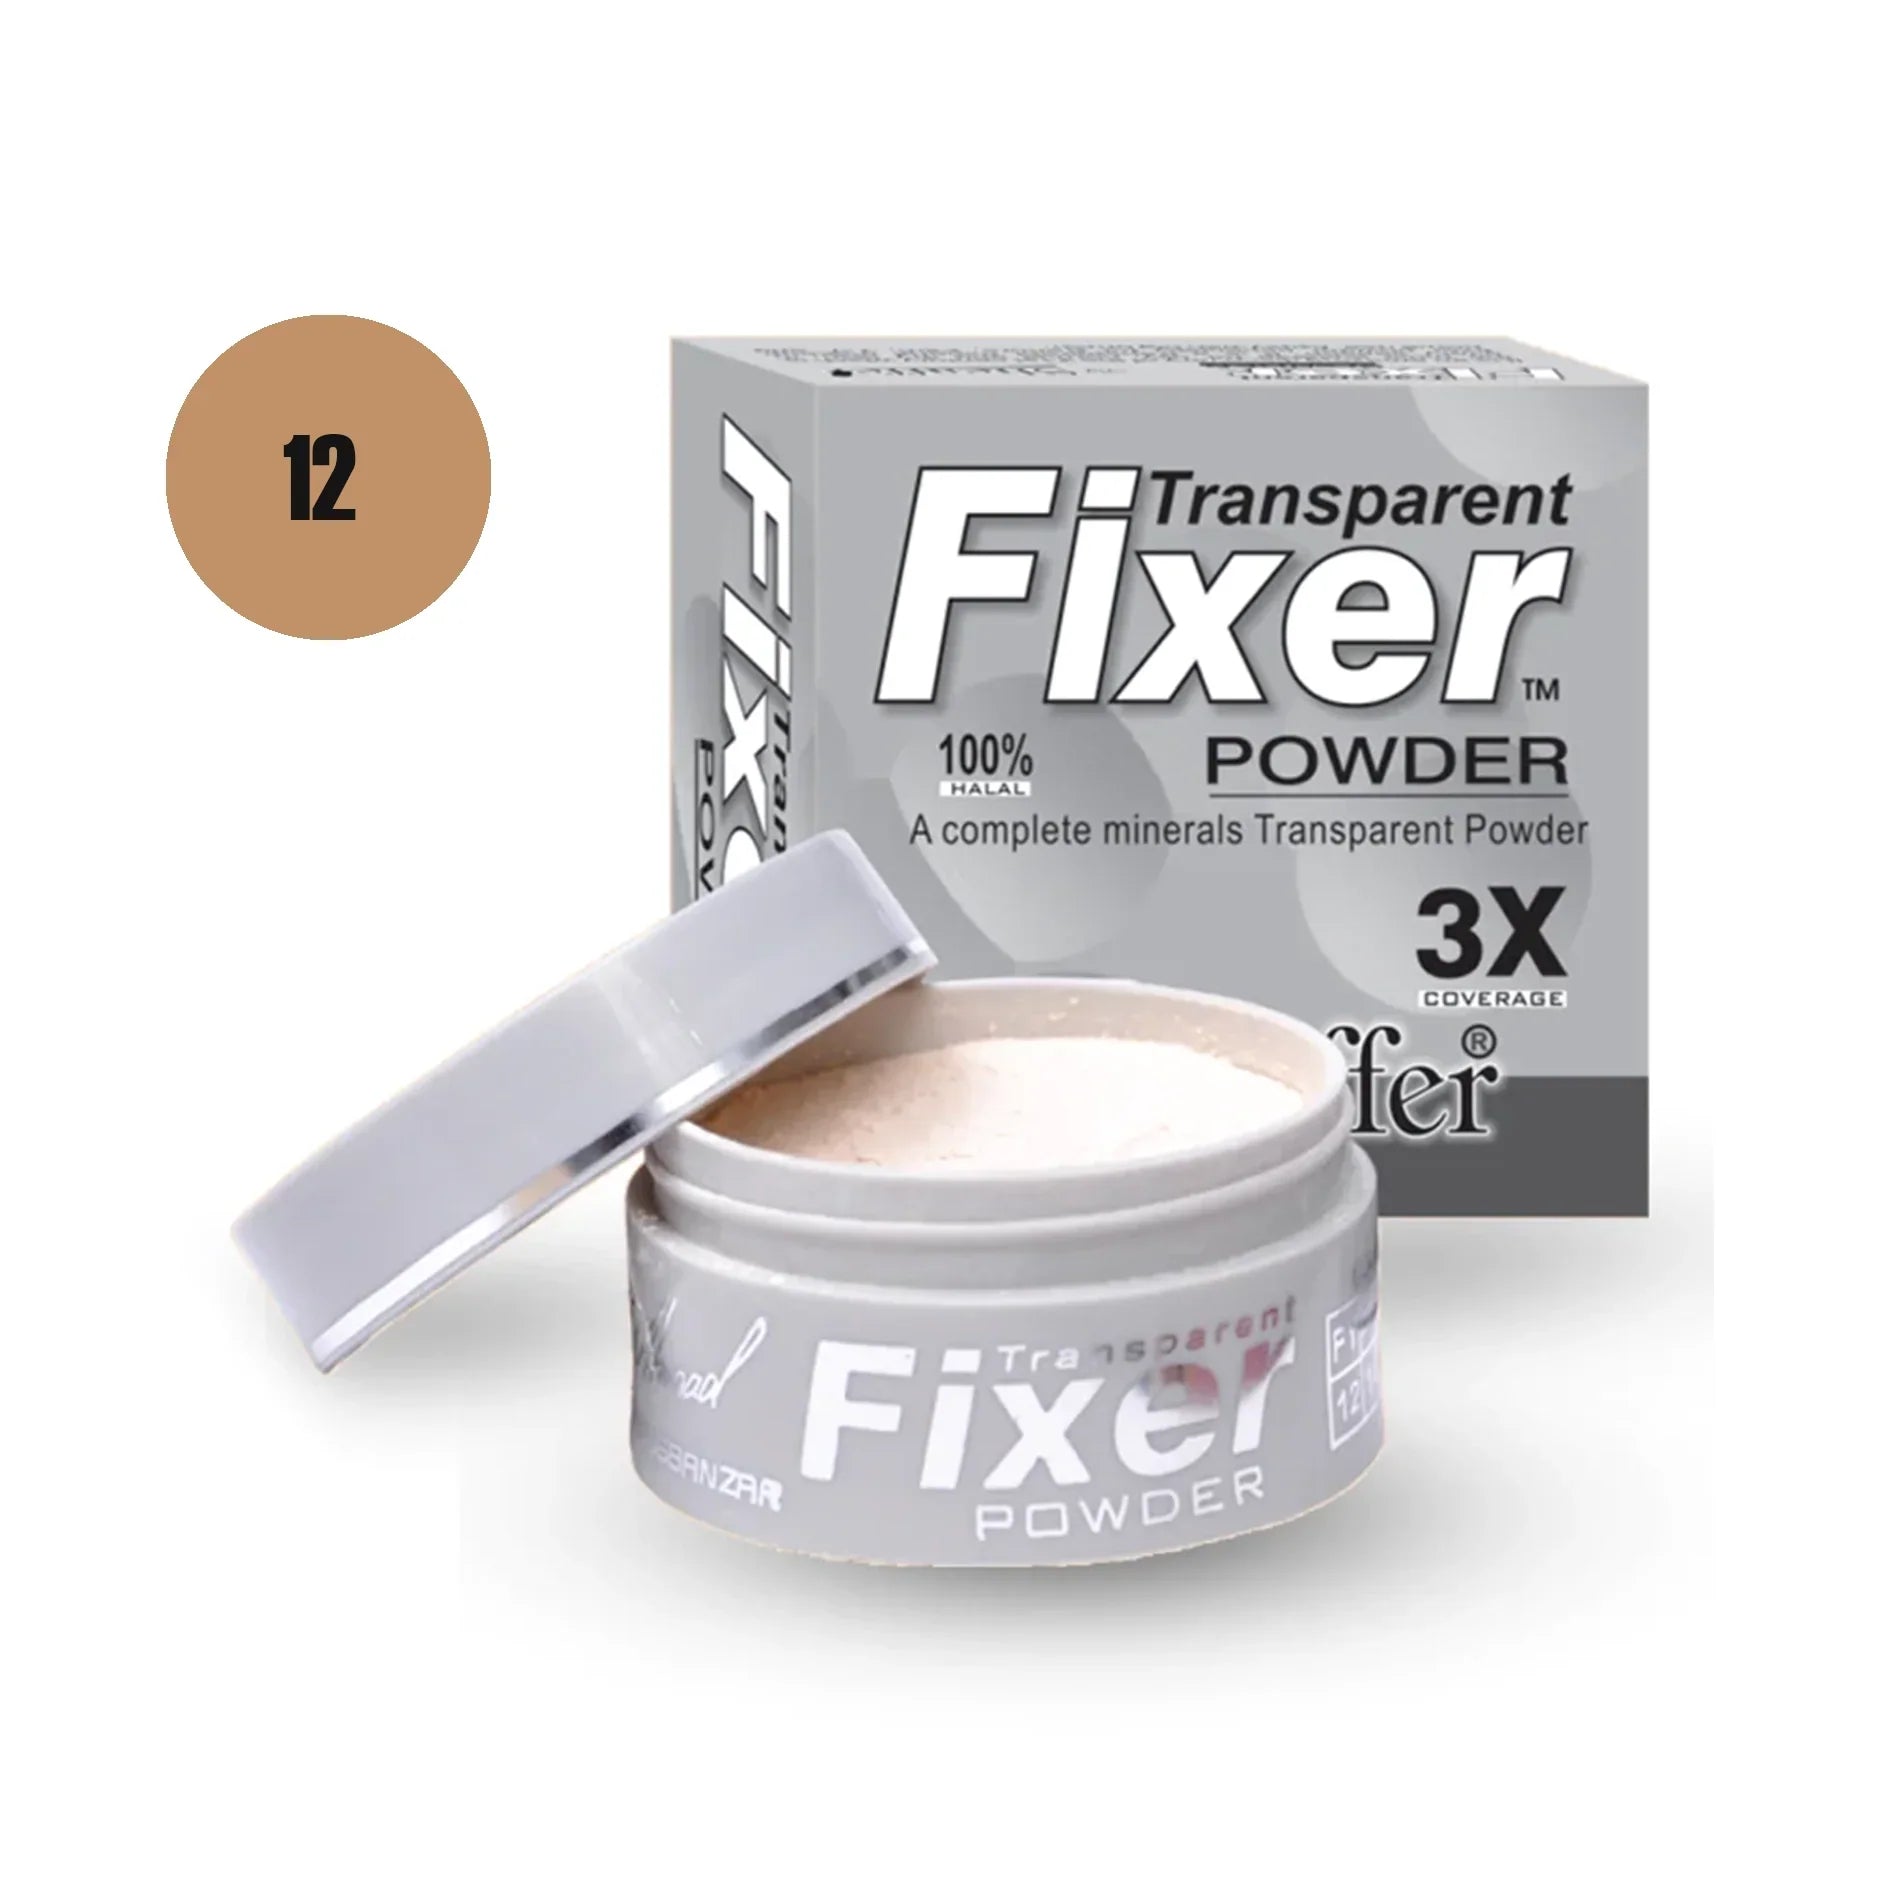 Sheaffer Transparent Fixer Powder Shade No 04 - Retailershop - Online Shopping Center